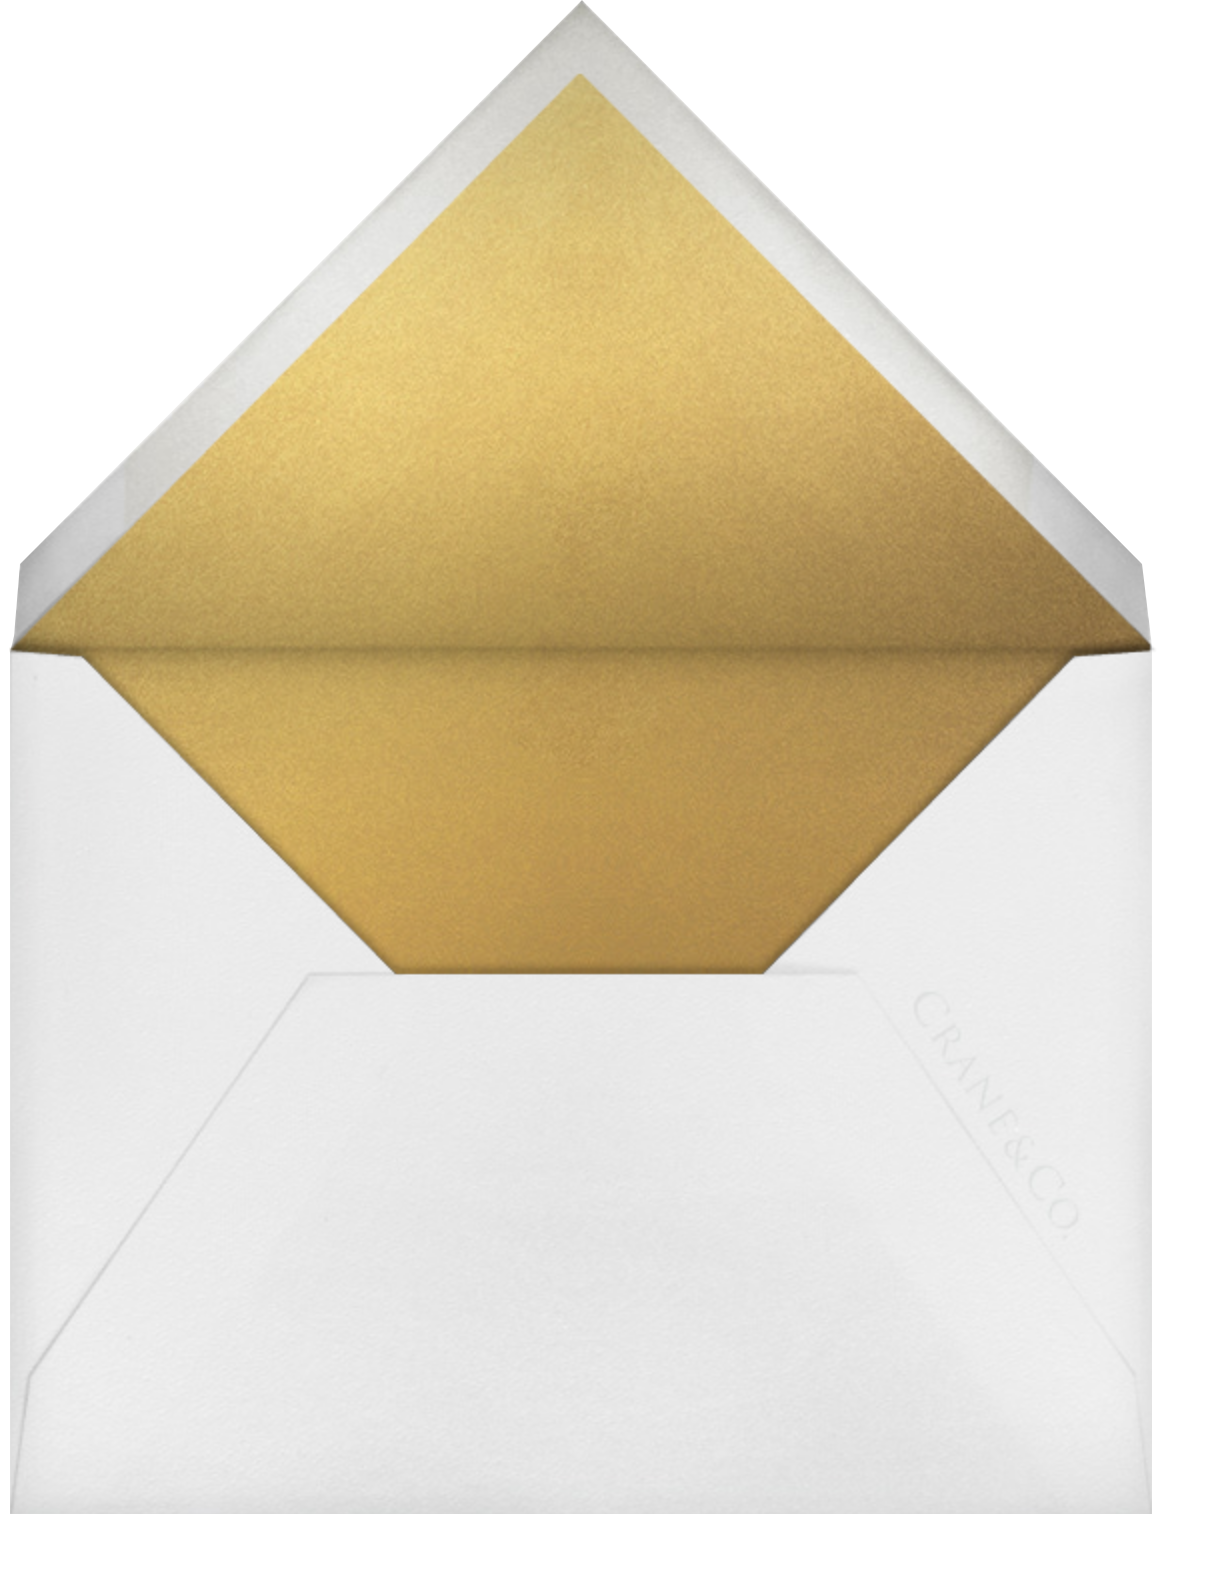 Silk Brocade I (Stationery) - Gold - Oscar de la Renta - Envelope